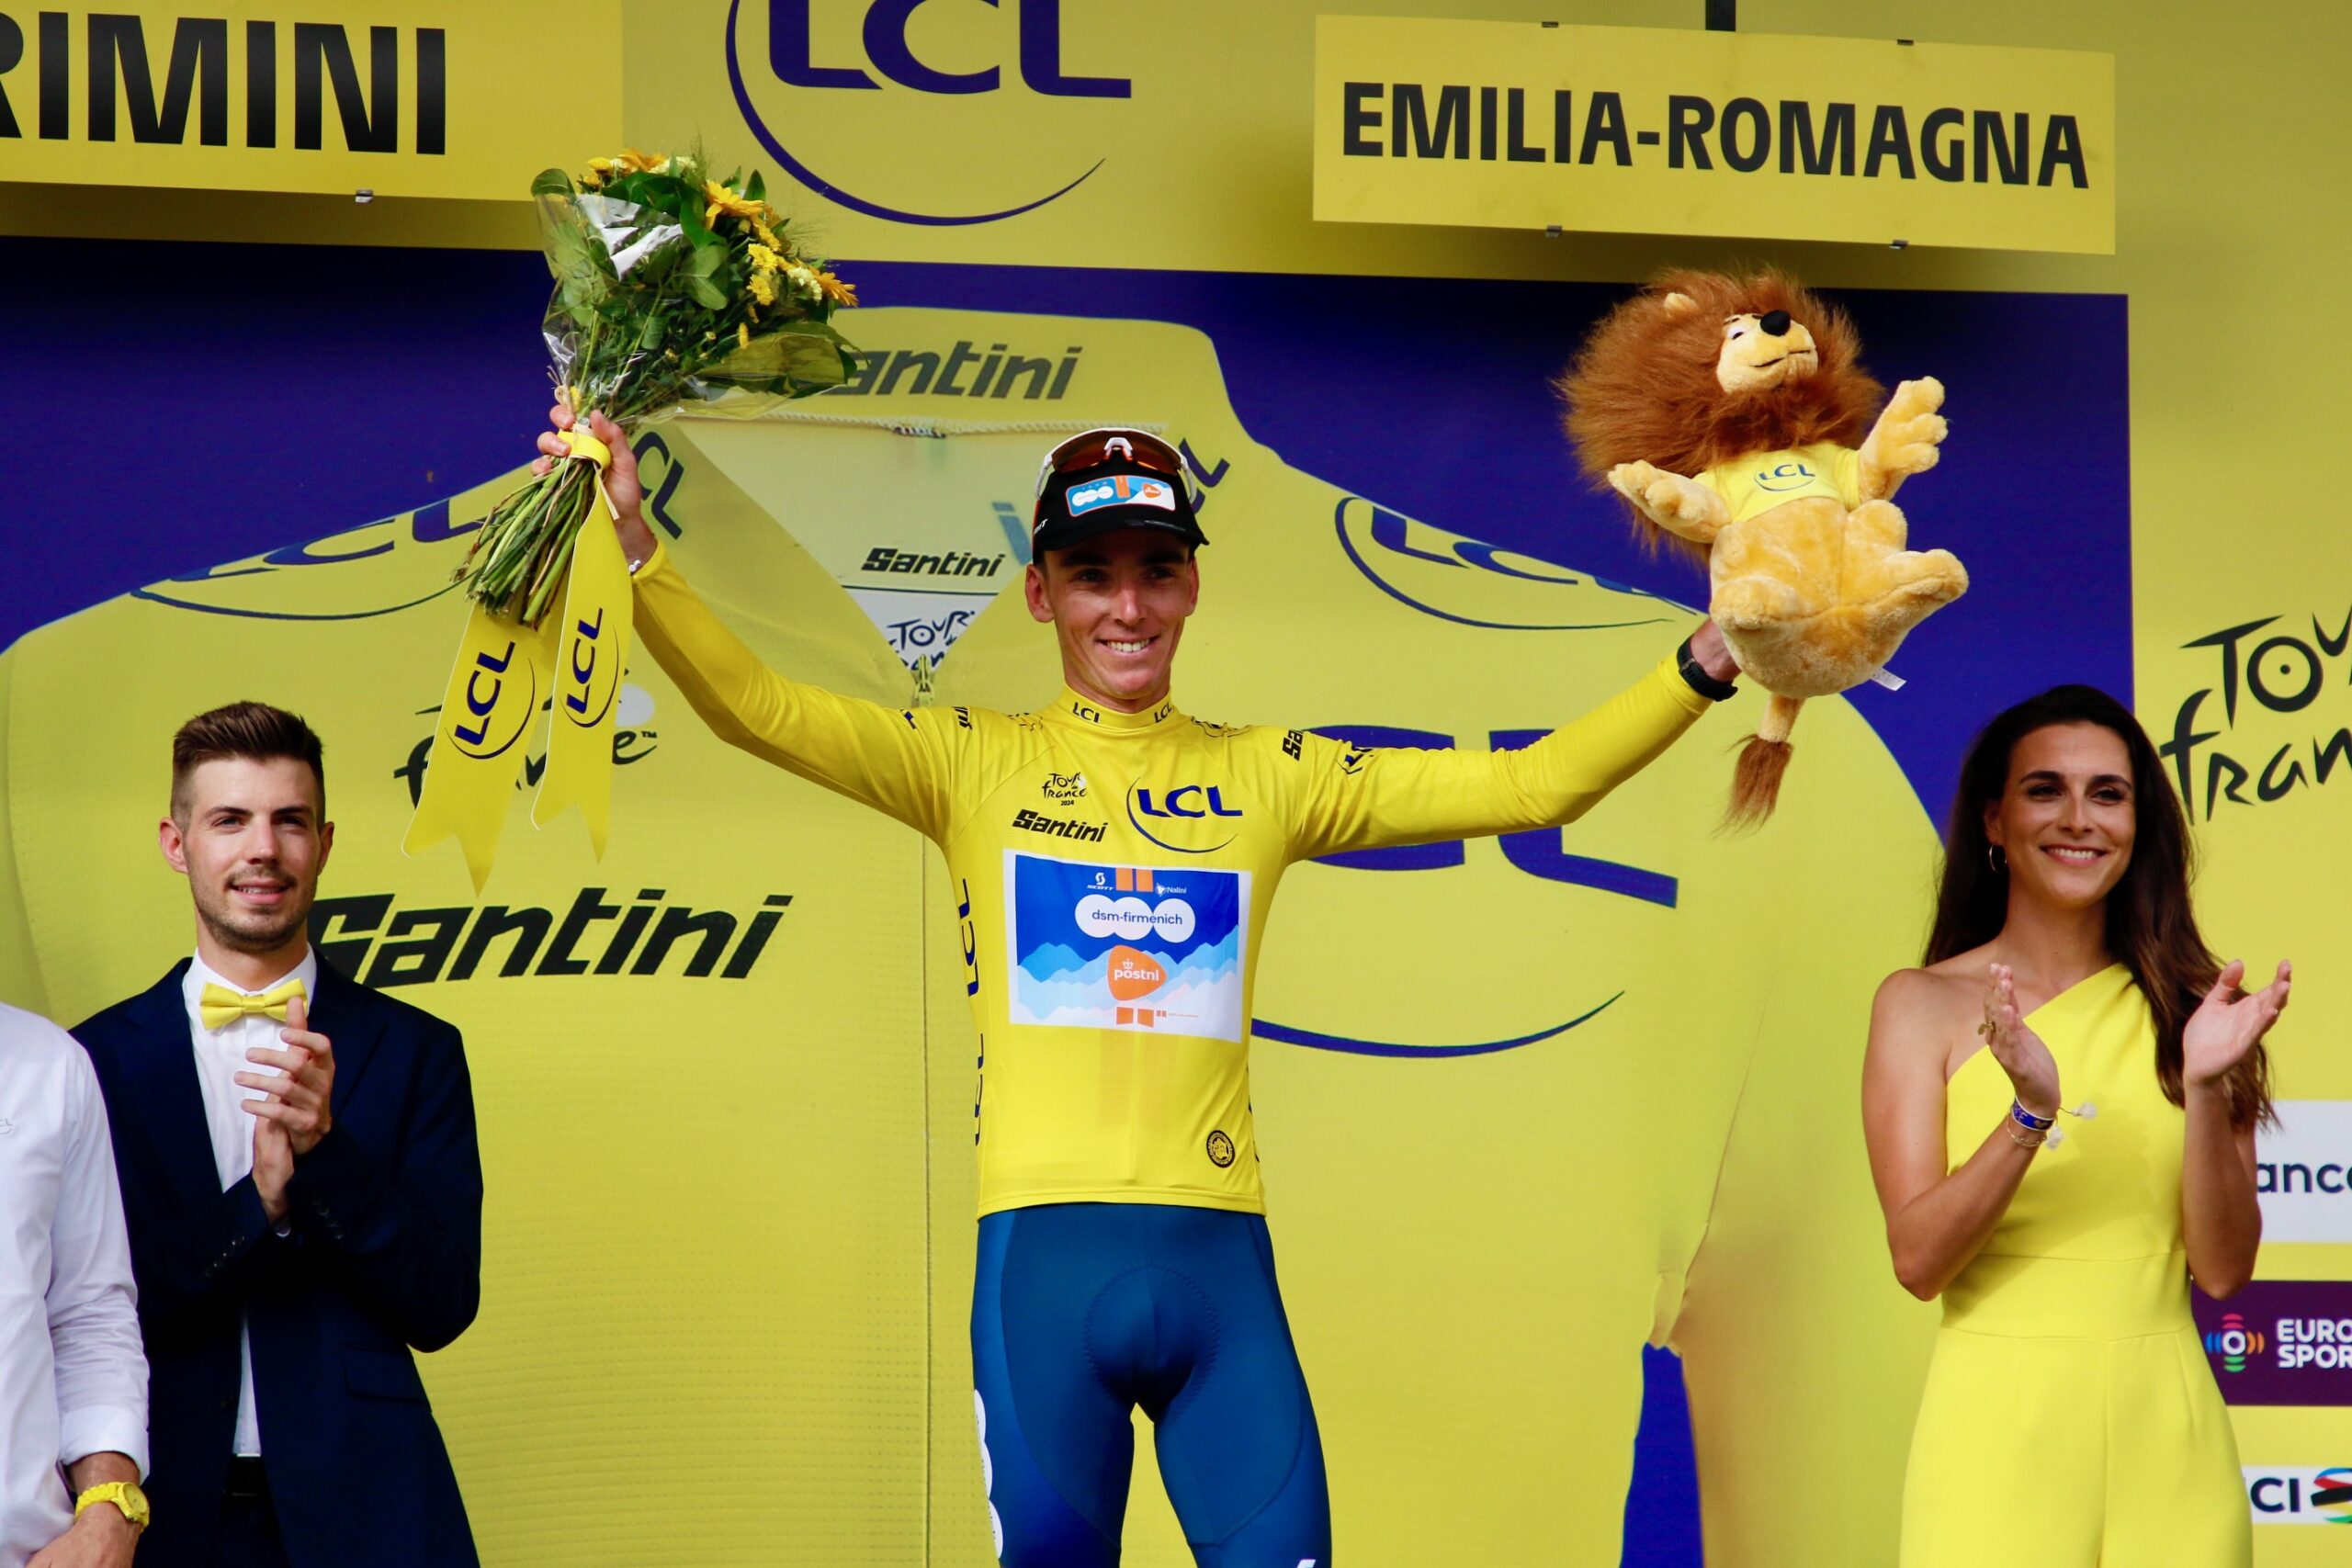 Romain Bardet in maglia gialla - foto Cailotto